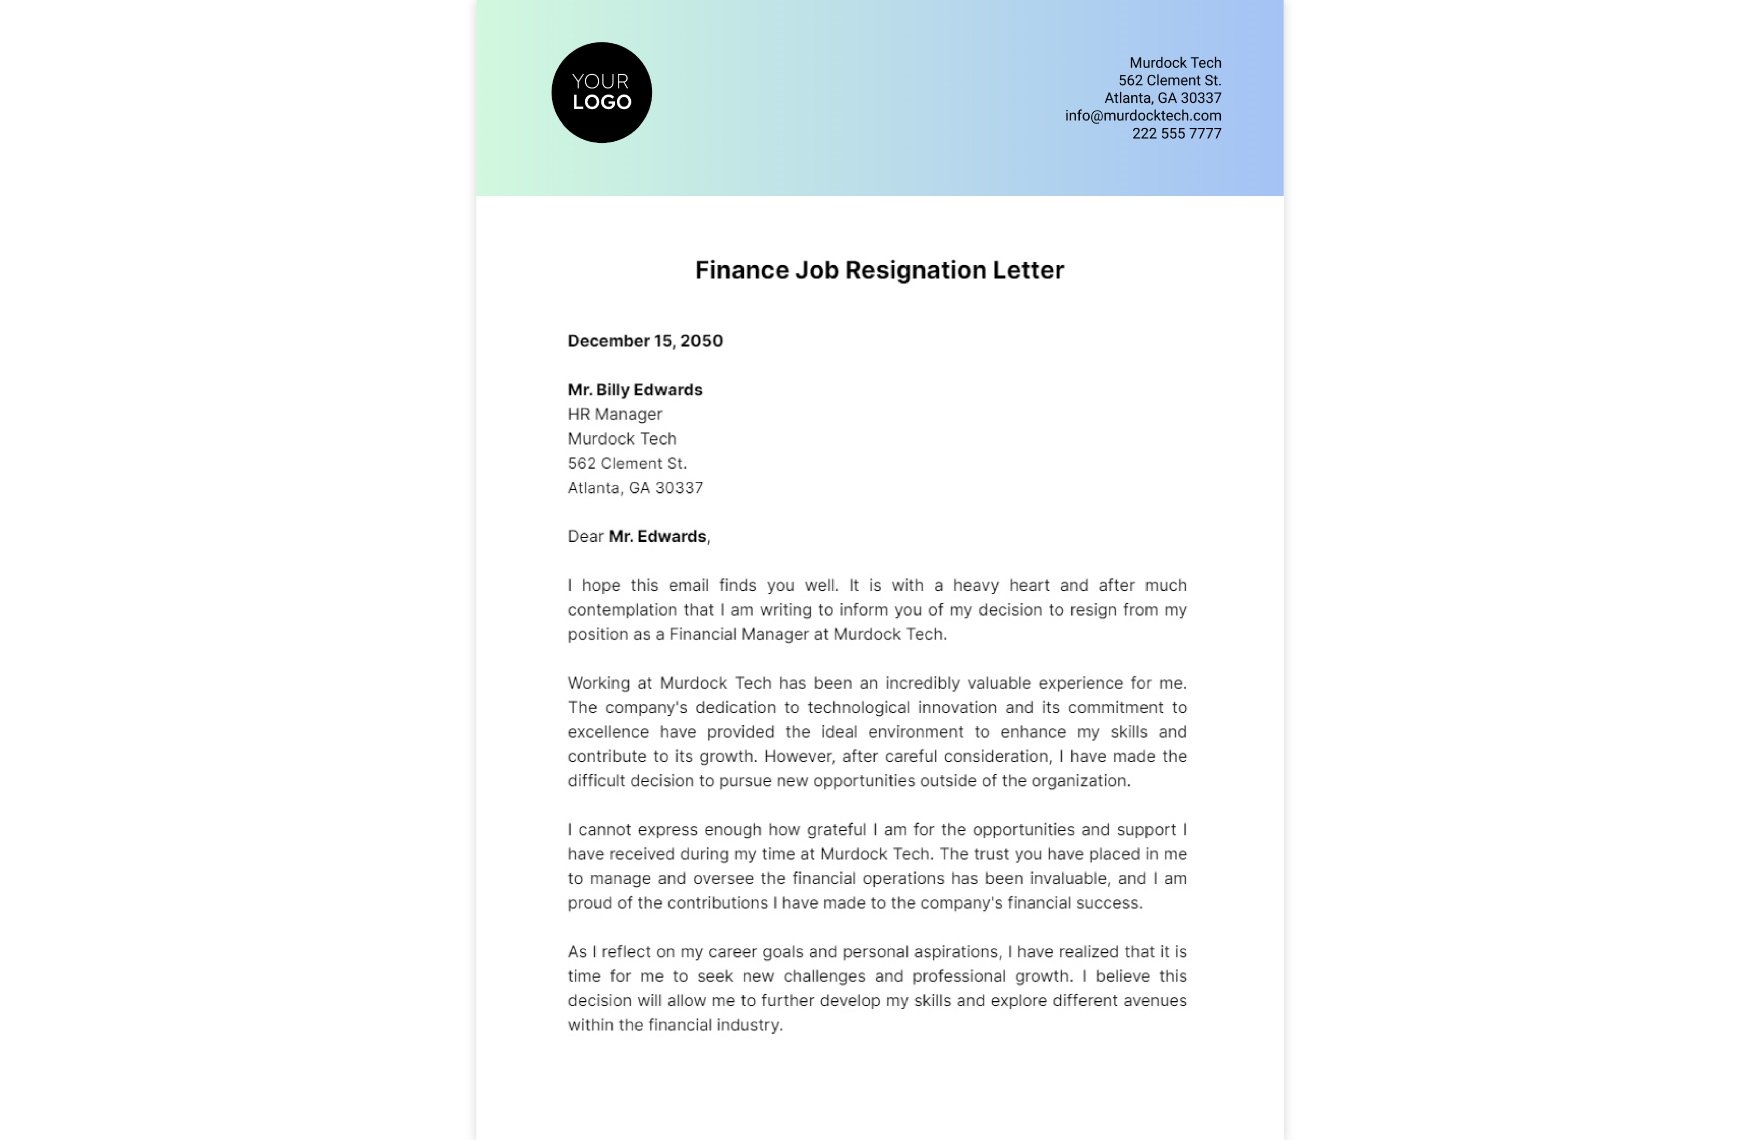 Finance Job Resignation Letter Template